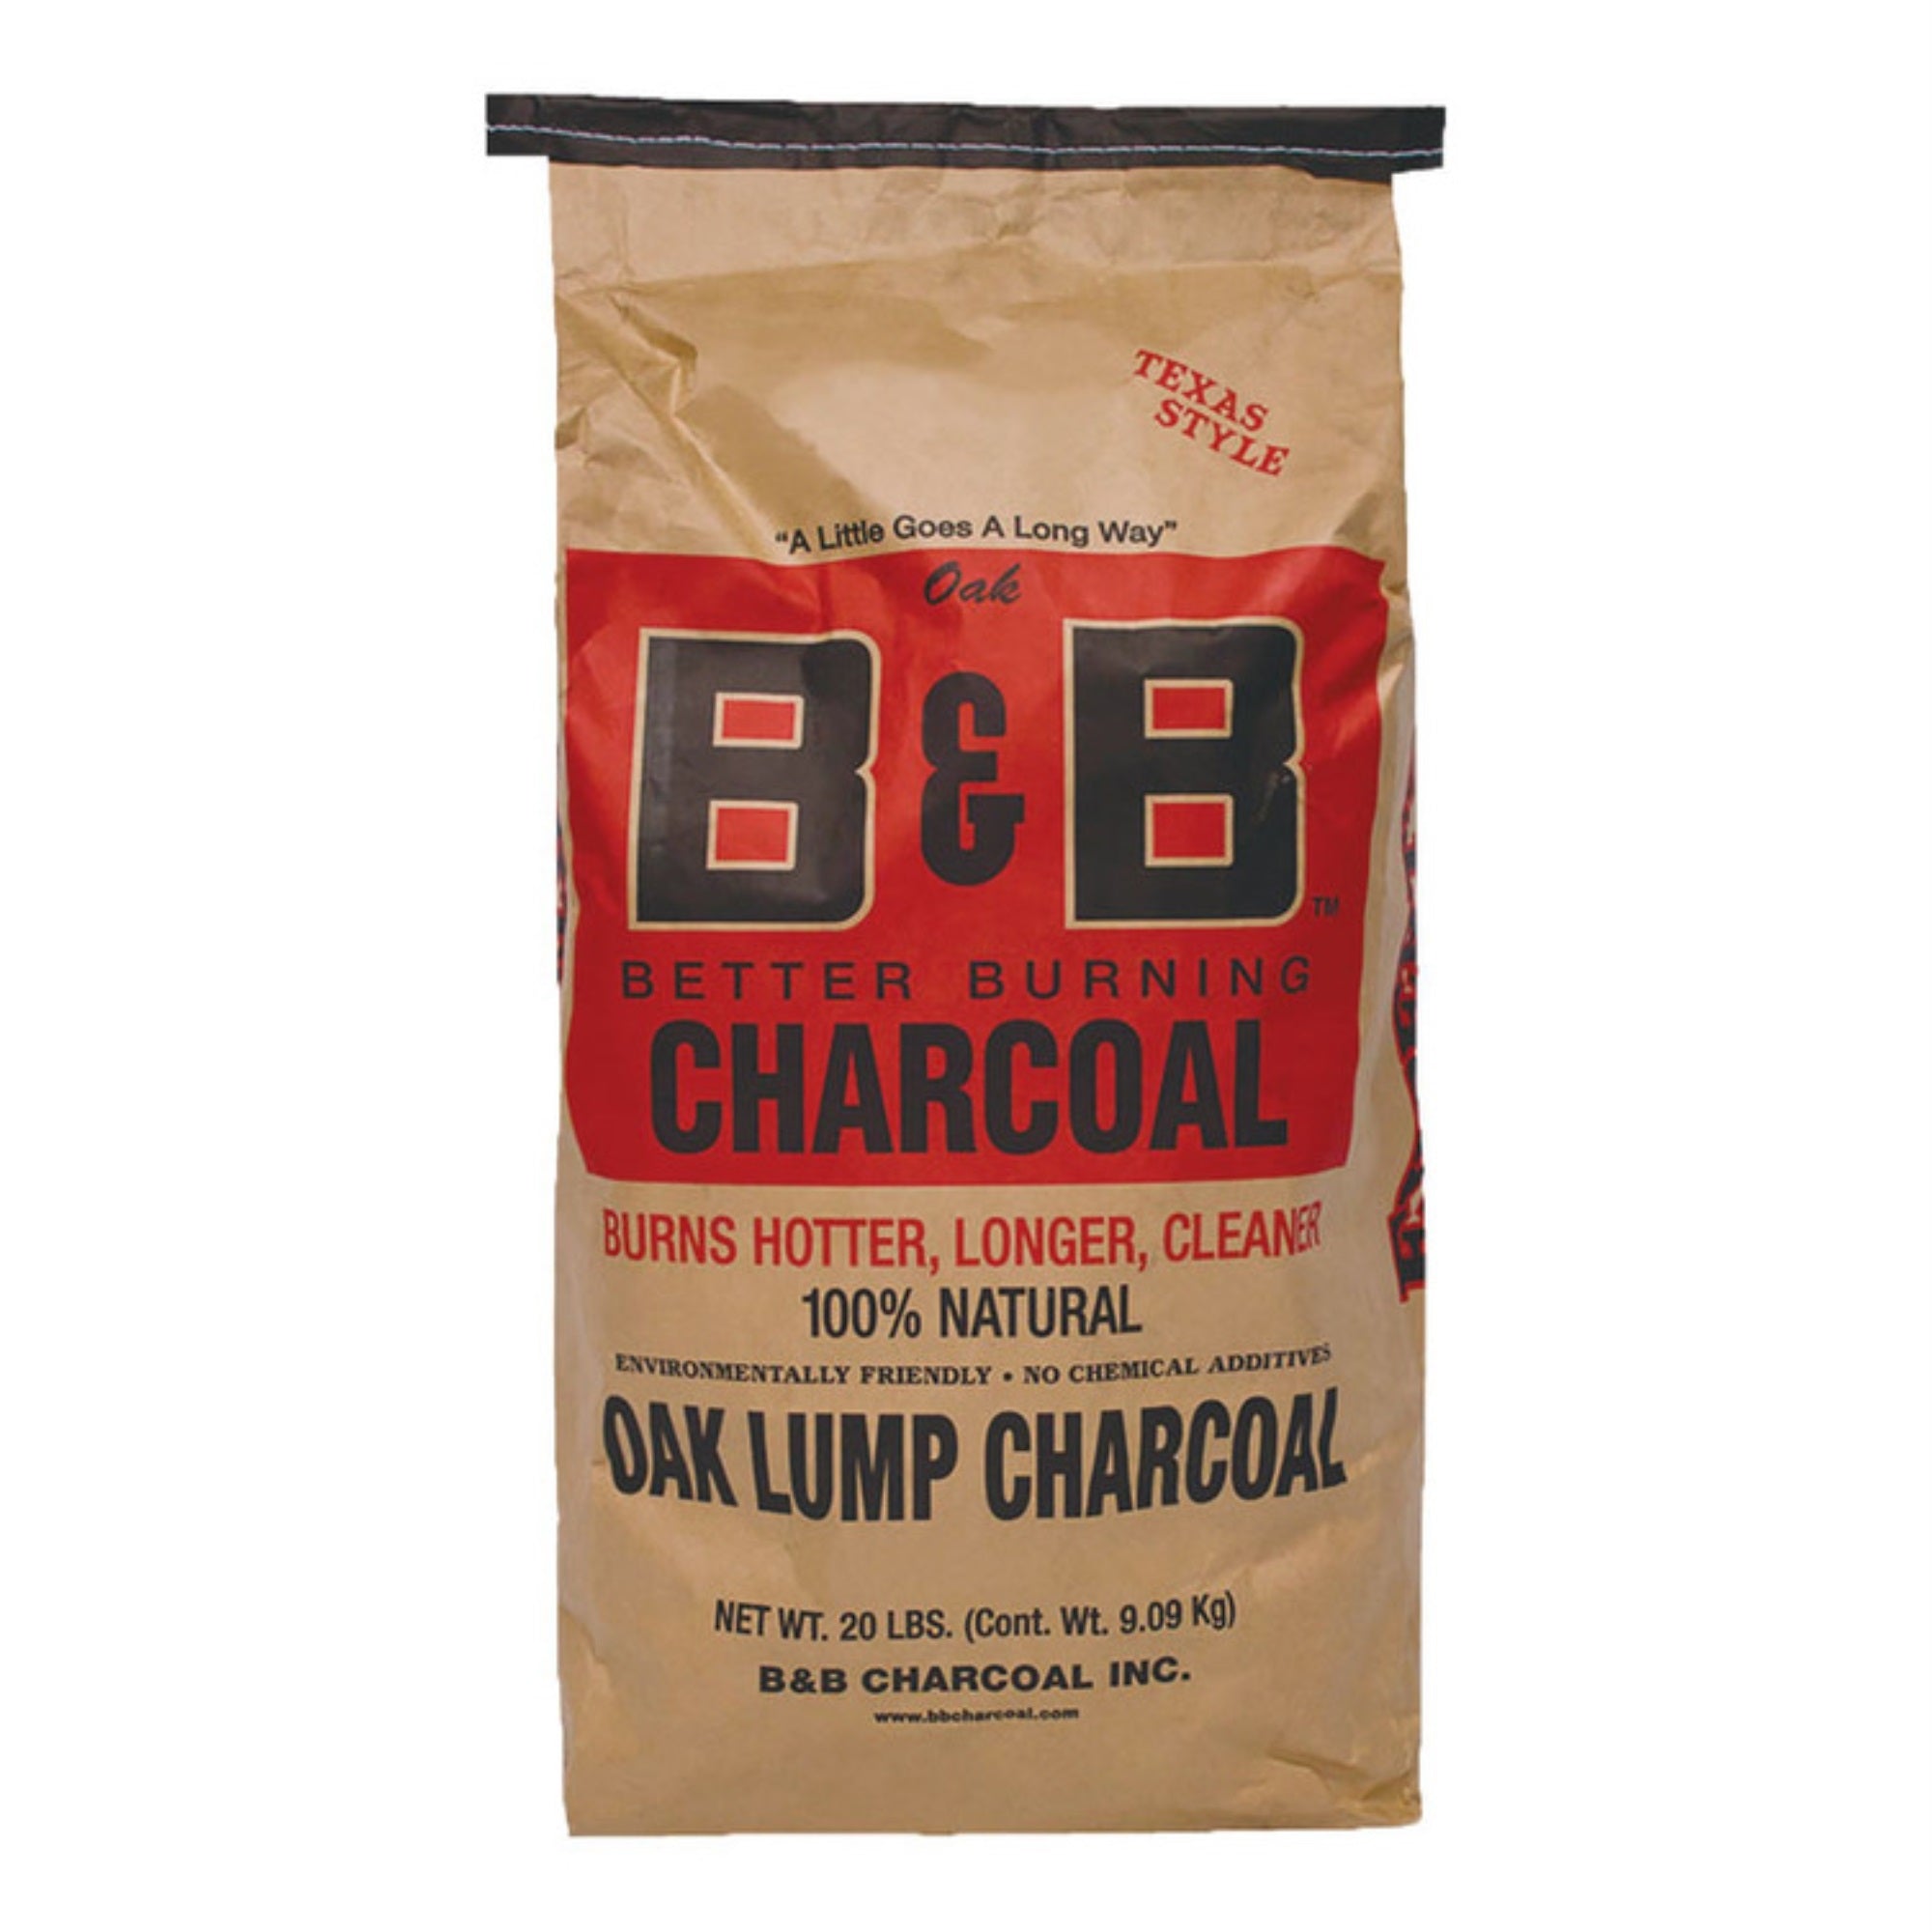 B&B Charcoal Oak Lump Charcoal, Flavor Oak, 20 lbs